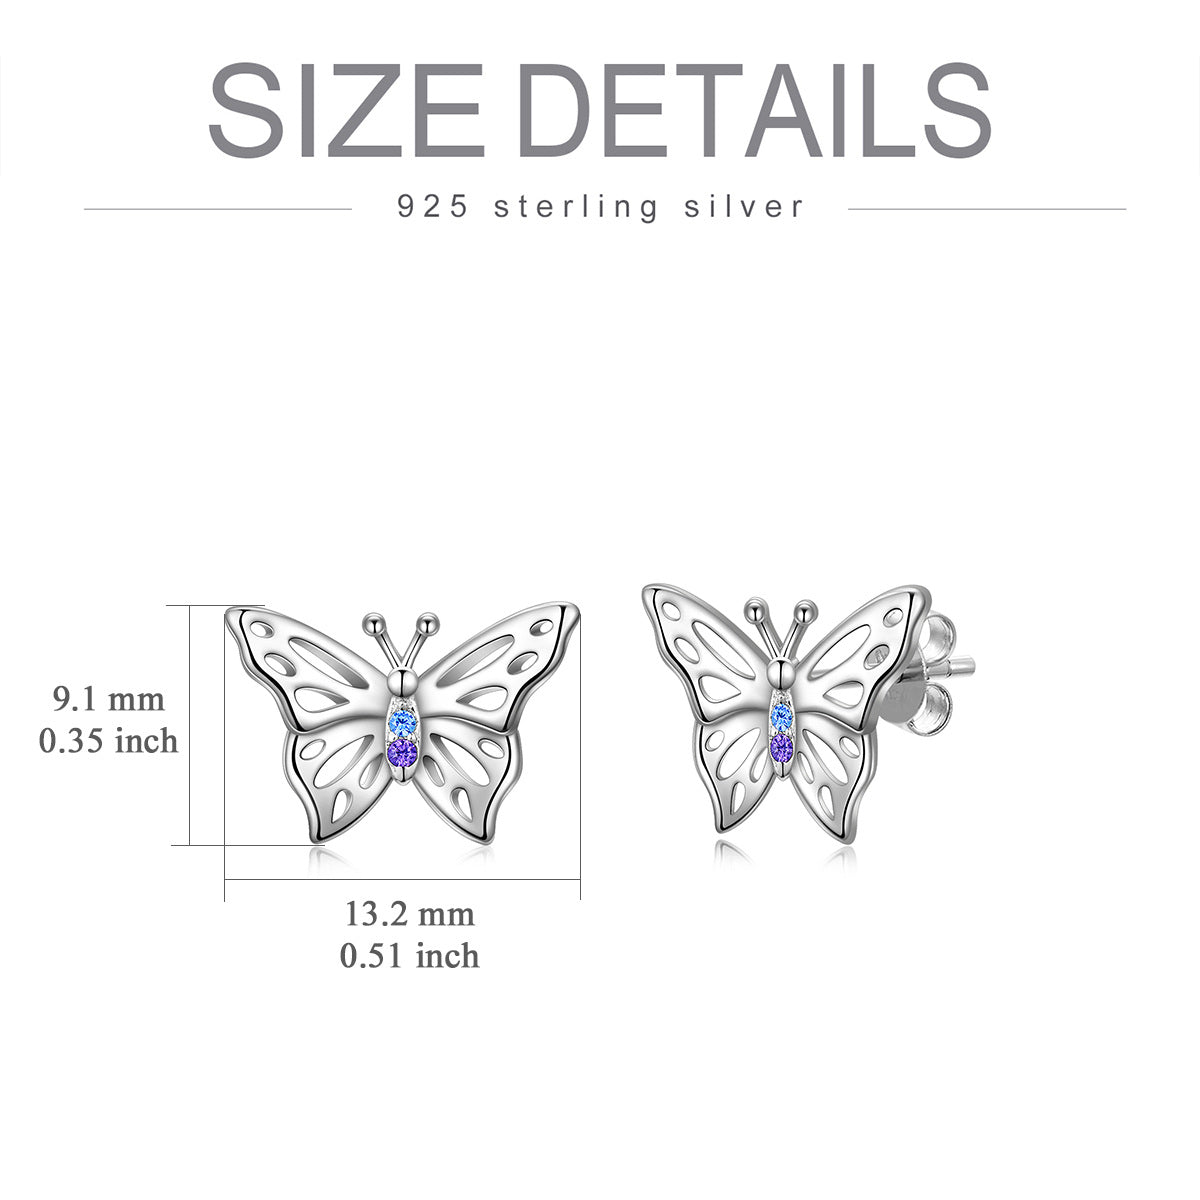 Butterfly Earrings S925 Sterling Silver Hypoallergenic Stud Earrings Jewelry Gifts for Women Teen Girls Birthday - Silver / 9.1*13.2 mm